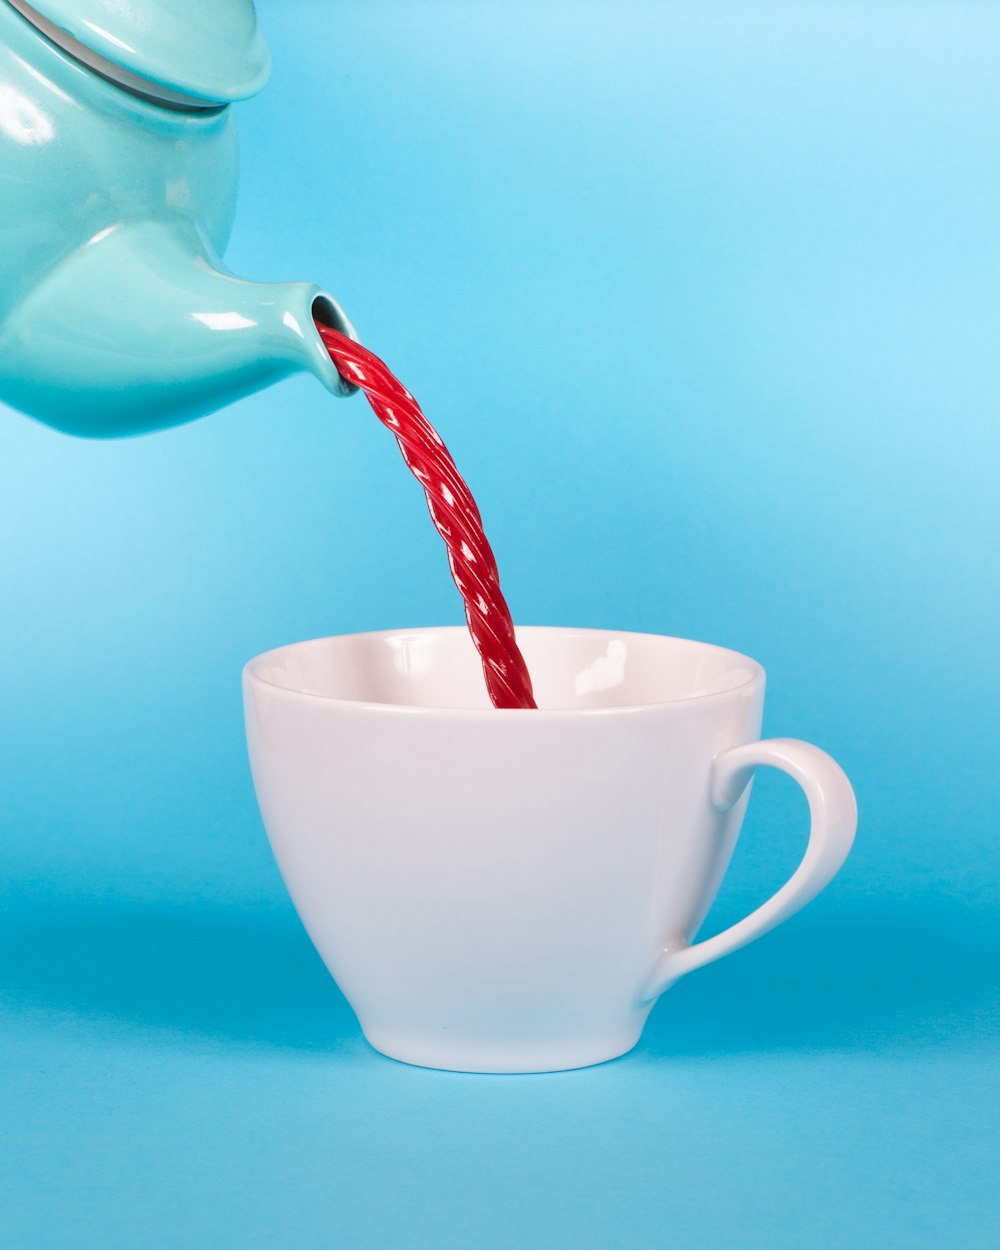 teiera verde che versa liquido rosso alla fotografia ravvicinata bianca della tazza da tè